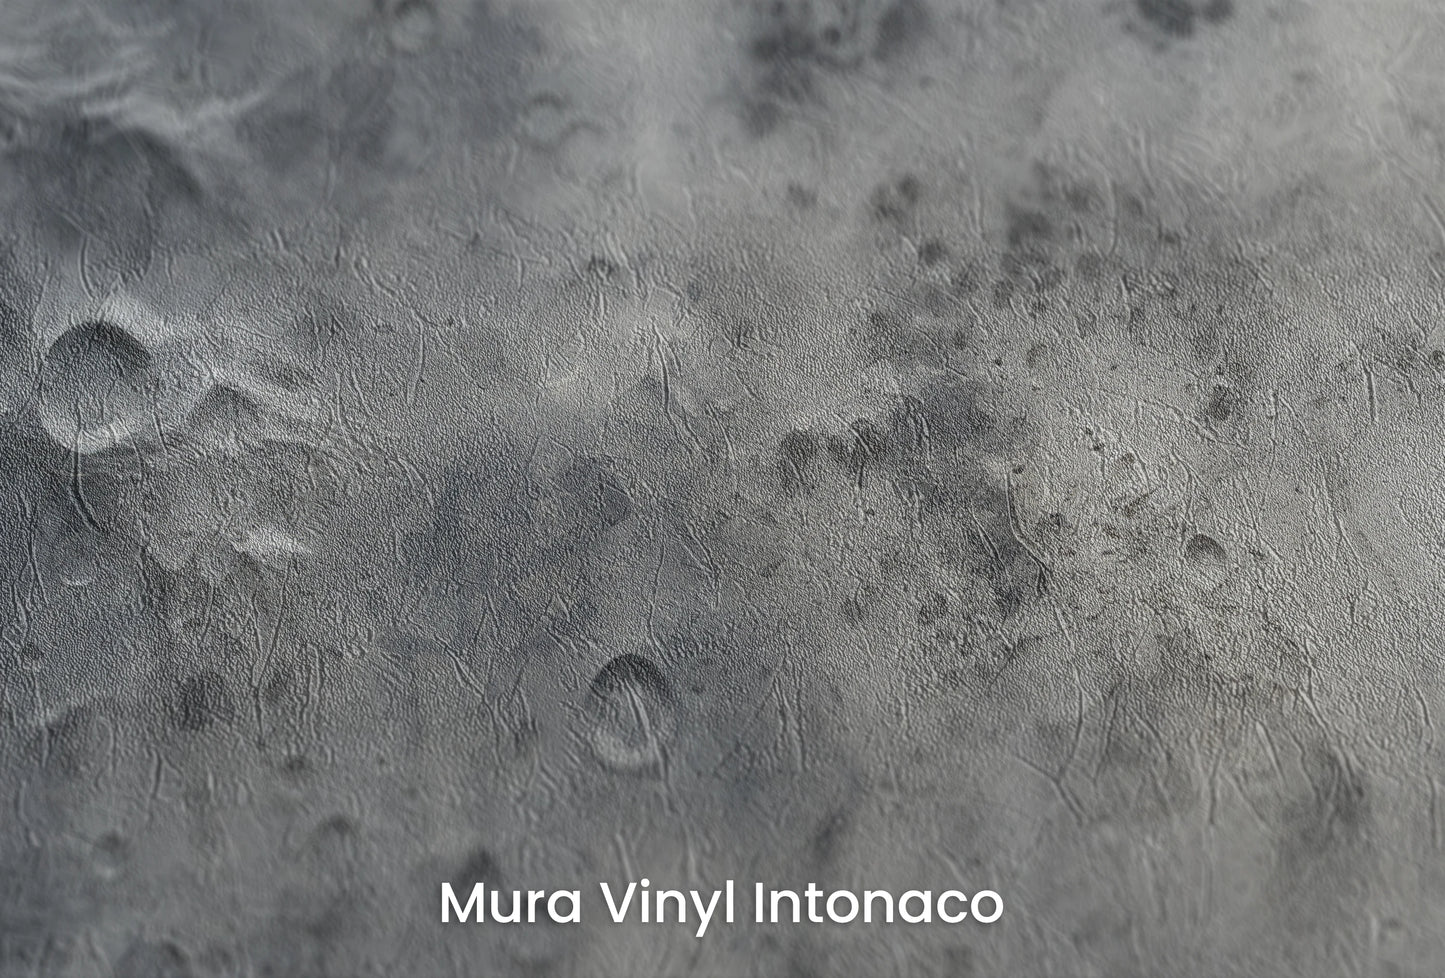 Zbliżenie na artystyczną fototapetę o nazwie Lunar Shadows na podłożu Mura Vinyl Intonaco - struktura tartego tynku.